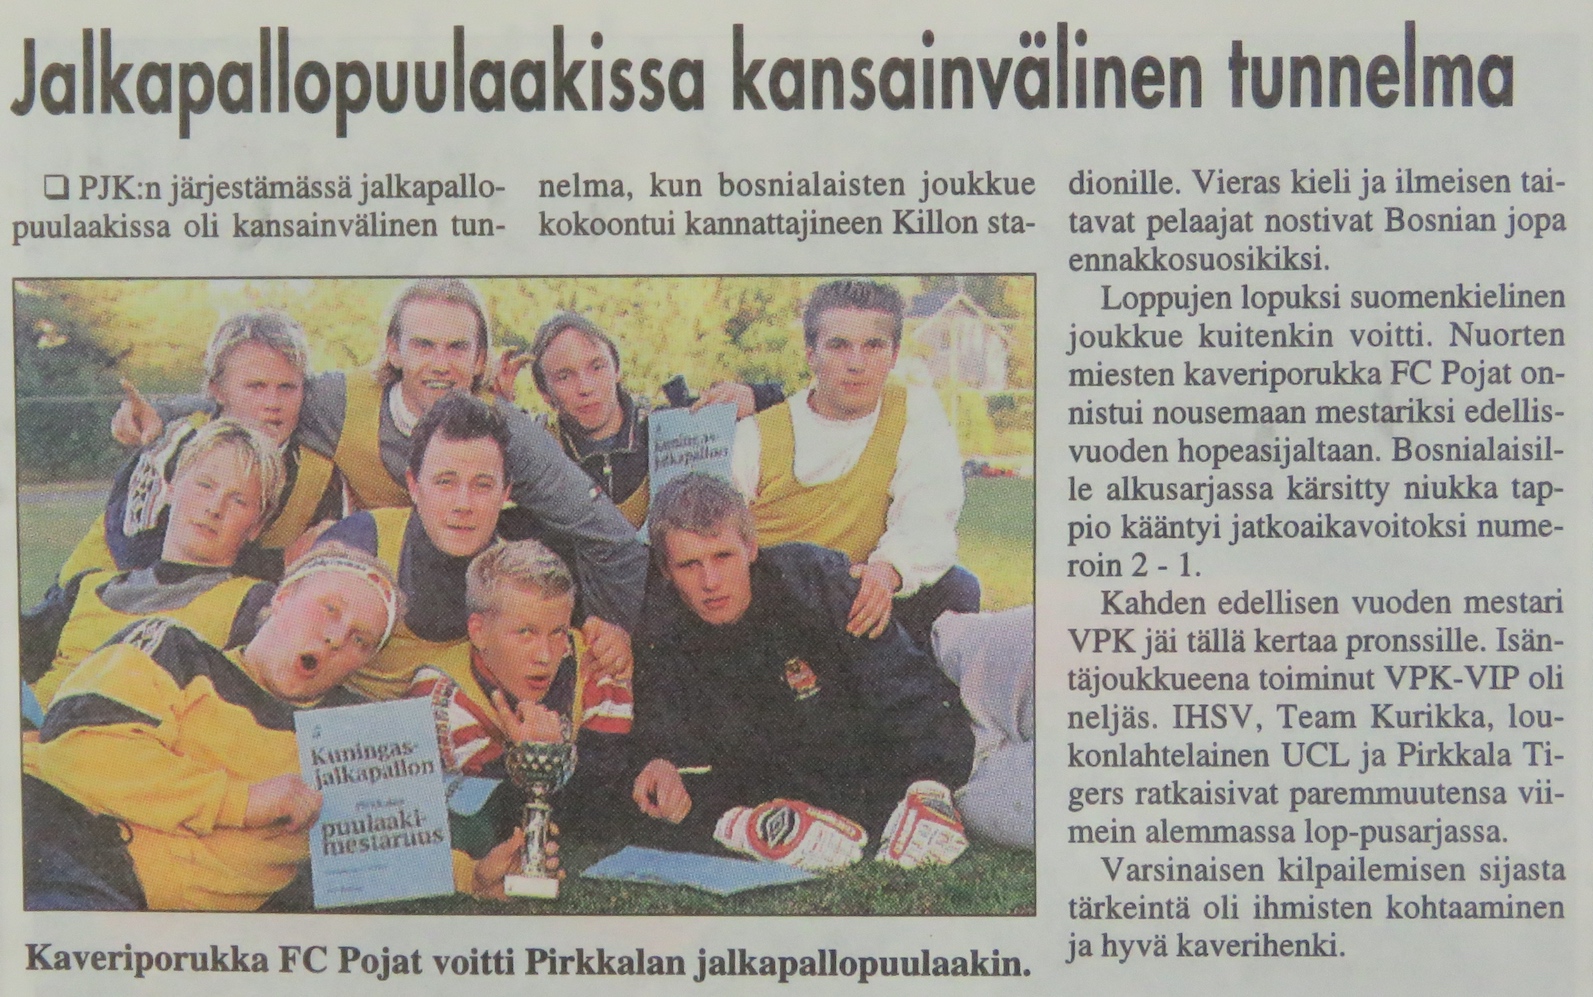 Turnausraportti Pirkkalaisessa 02.10. 2002